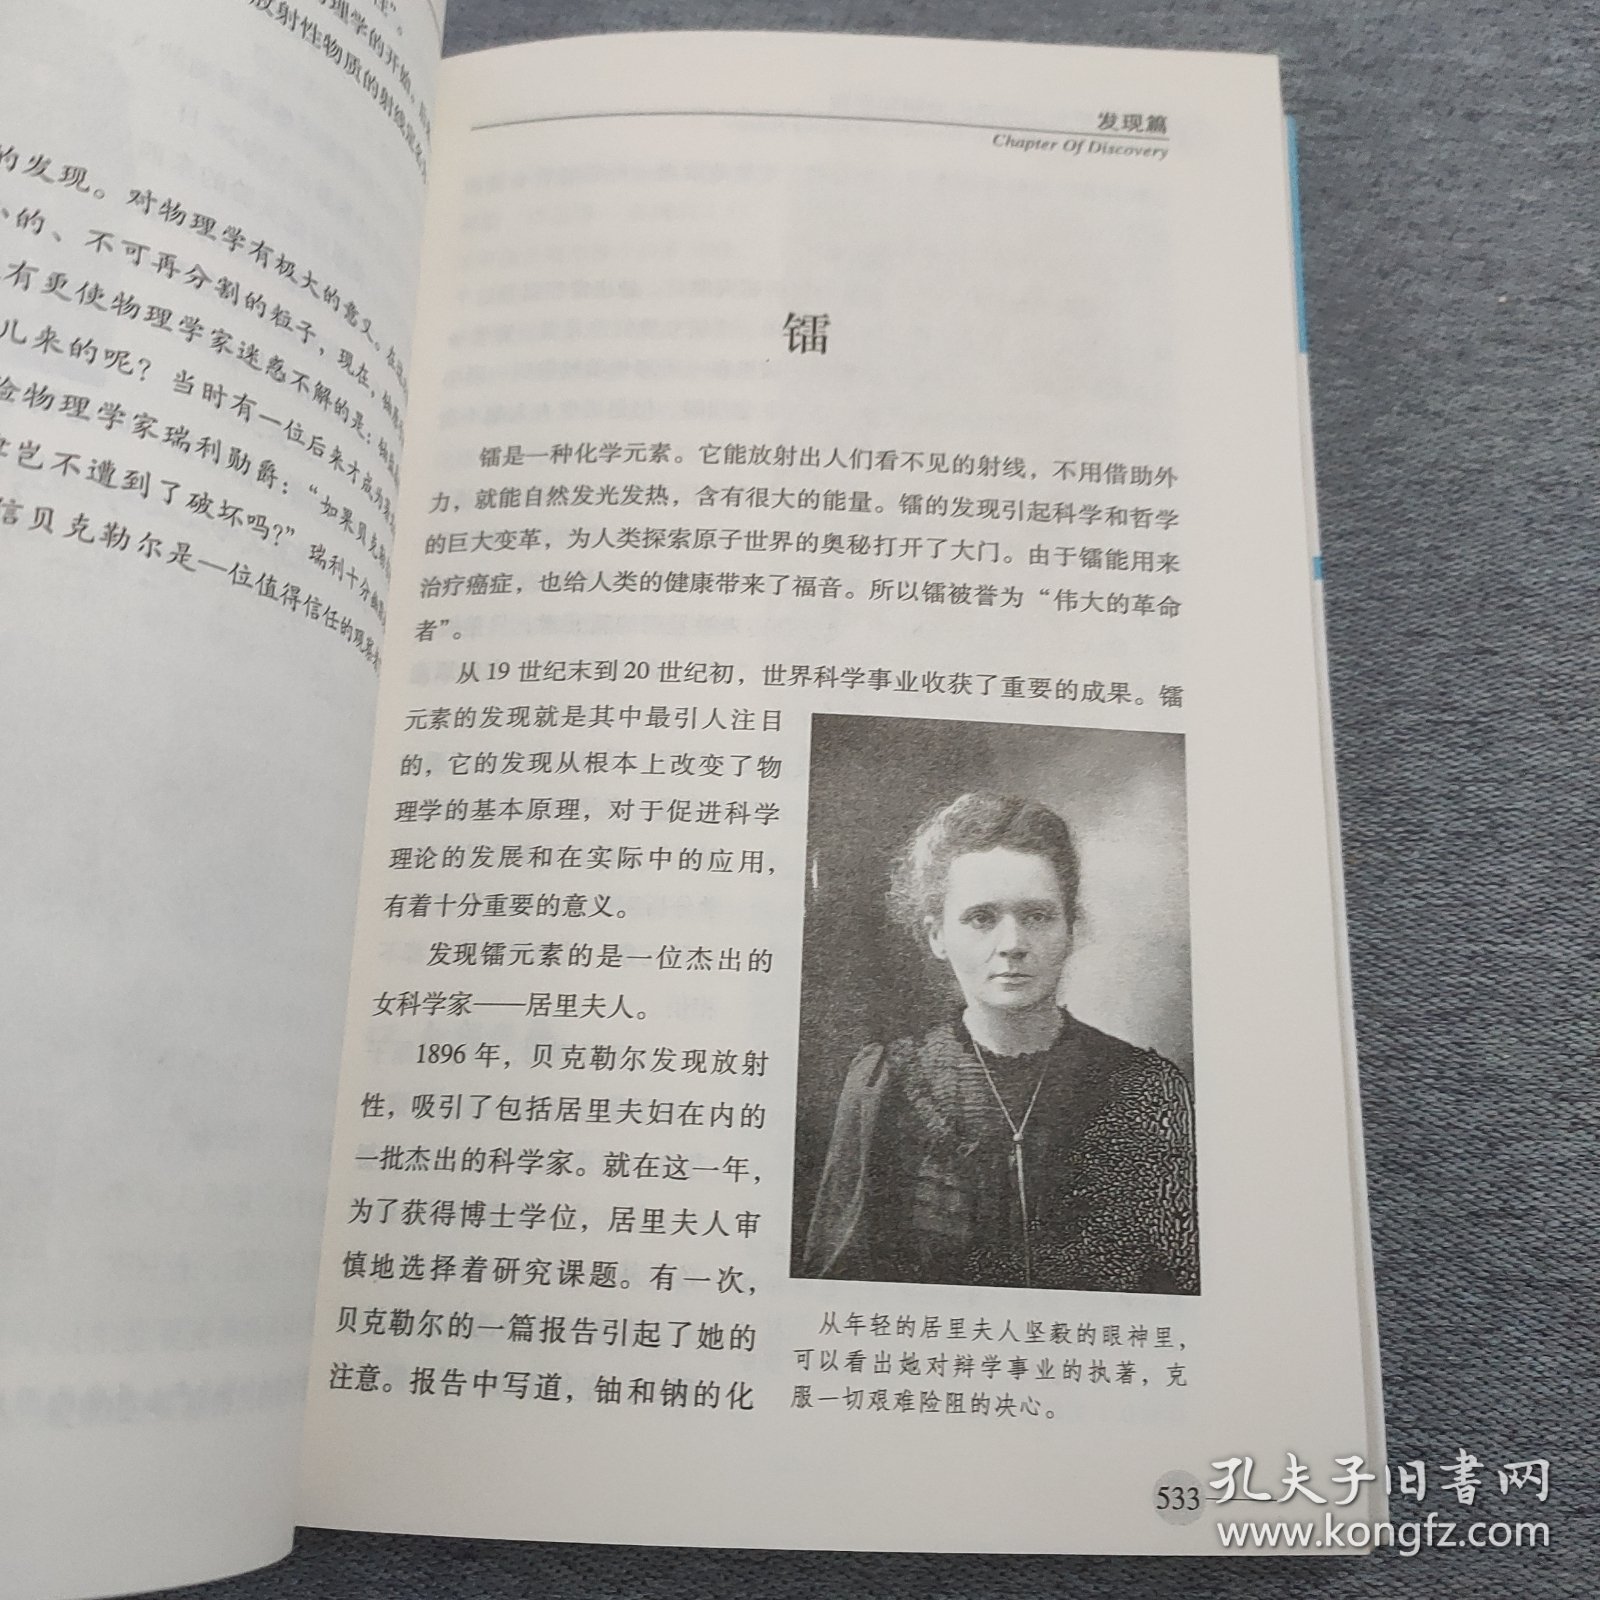 世界科学史上的伟大发明和发现——中国青少年典藏读本